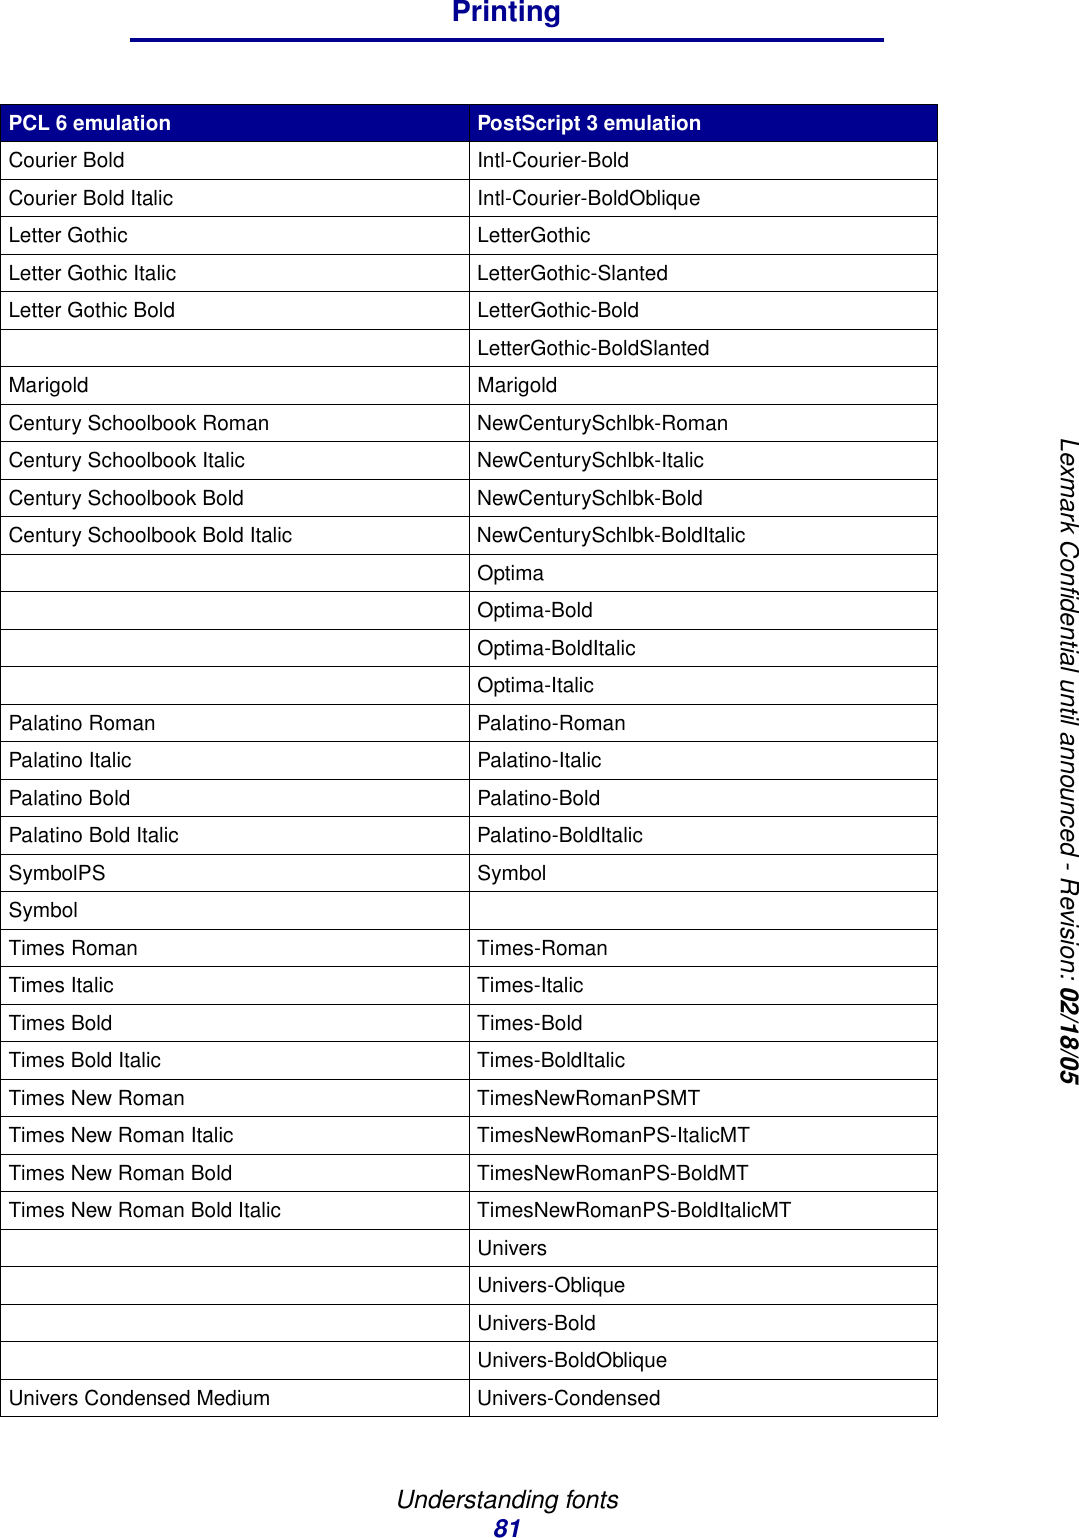 Understanding fonts81PrintingLexmark Confidential until announced - Revision: 02/18/05Courier Bold Intl-Courier-BoldCourier Bold Italic Intl-Courier-BoldObliqueLetter Gothic LetterGothicLetter Gothic Italic LetterGothic-SlantedLetter Gothic Bold LetterGothic-BoldLetterGothic-BoldSlantedMarigold MarigoldCentury Schoolbook Roman NewCenturySchlbk-RomanCentury Schoolbook Italic NewCenturySchlbk-ItalicCentury Schoolbook Bold NewCenturySchlbk-BoldCentury Schoolbook Bold Italic NewCenturySchlbk-BoldItalicOptimaOptima-BoldOptima-BoldItalicOptima-ItalicPalatino Roman Palatino-RomanPalatino Italic Palatino-ItalicPalatino Bold Palatino-BoldPalatino Bold Italic Palatino-BoldItalicSymbolPS SymbolSymbolTimes Roman Times-RomanTimes Italic Times-ItalicTimes Bold Times-BoldTimes Bold Italic Times-BoldItalicTimes New Roman TimesNewRomanPSMTTimes New Roman Italic TimesNewRomanPS-ItalicMTTimes New Roman Bold TimesNewRomanPS-BoldMTTimes New Roman Bold Italic TimesNewRomanPS-BoldItalicMTUniversUnivers-ObliqueUnivers-BoldUnivers-BoldObliqueUnivers Condensed Medium Univers-CondensedPCL 6 emulation PostScript 3 emulation